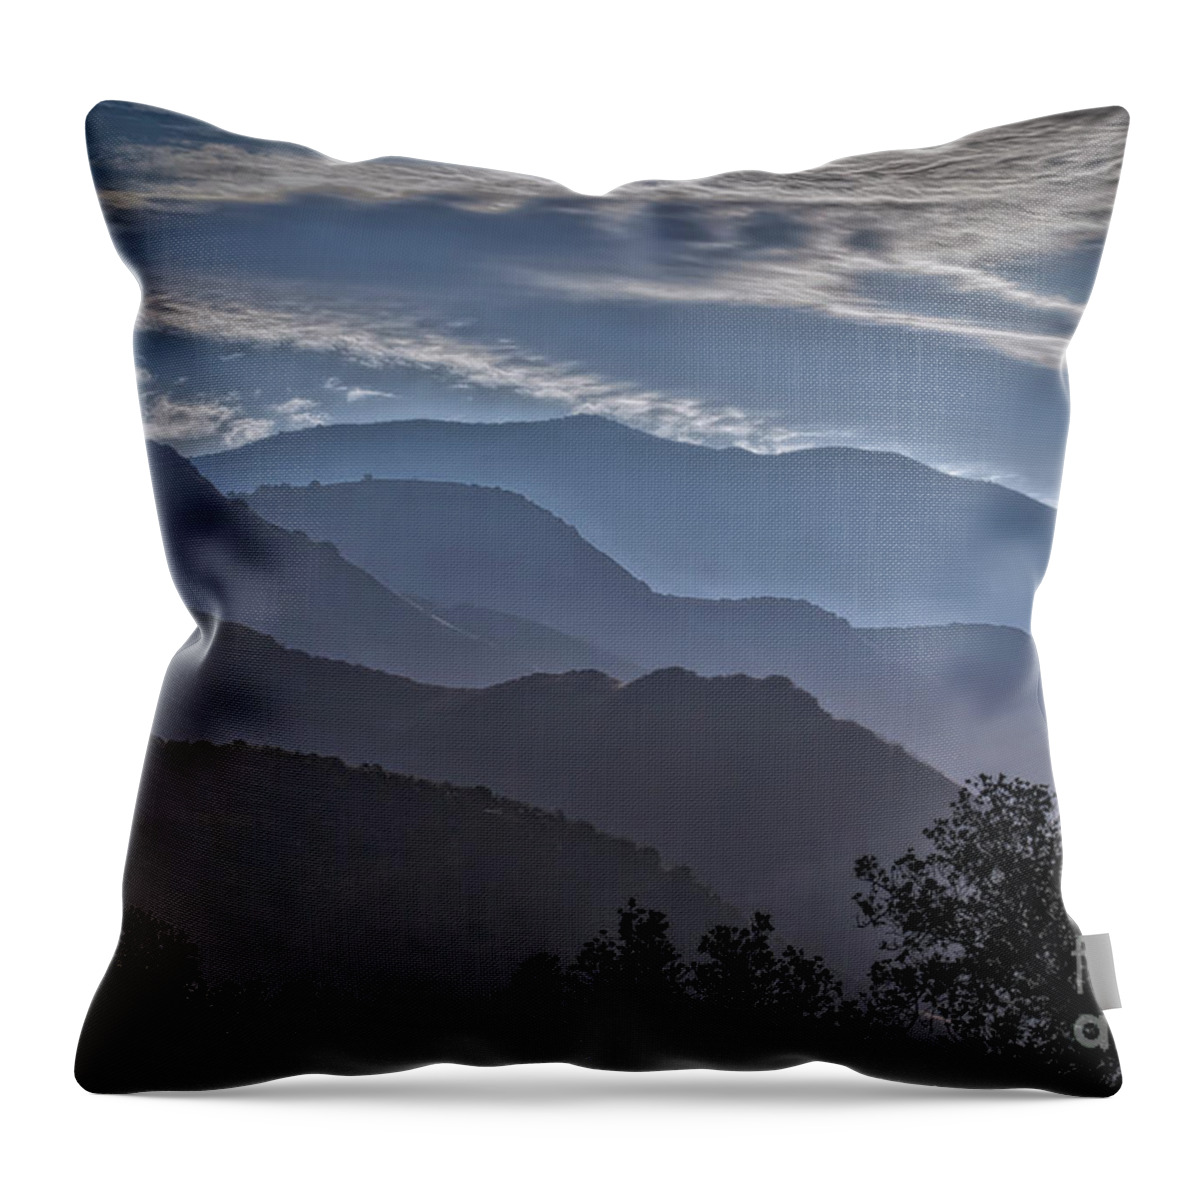 Santa Ynez Mountains Throw Pillow featuring the photograph Santa Ynez Mountains by Mitch Shindelbower